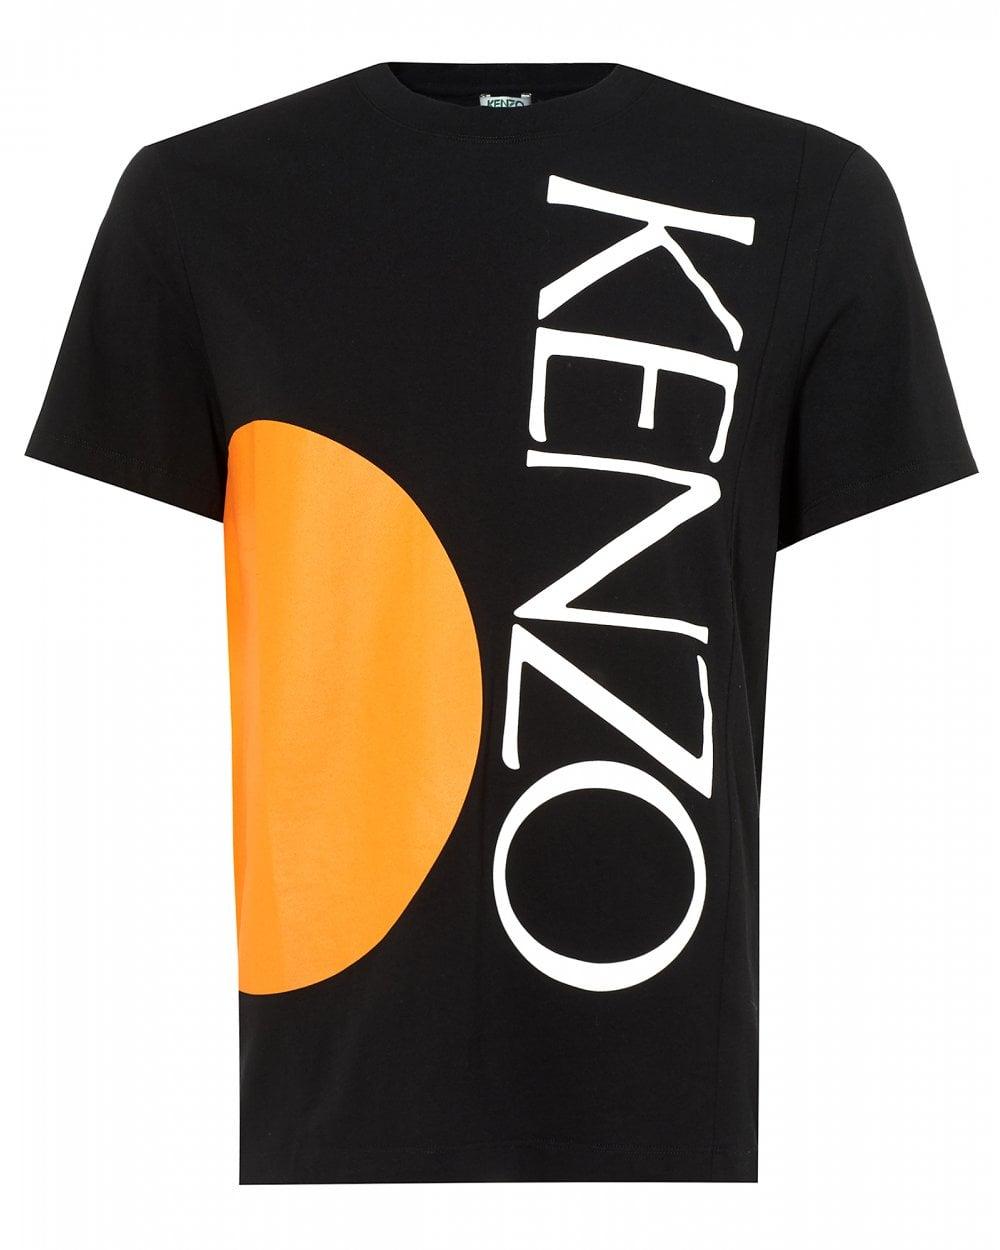 Orange Circle Logo - Kenzo Mens Square Logo T-Shirt, Orange Circle Black Tee